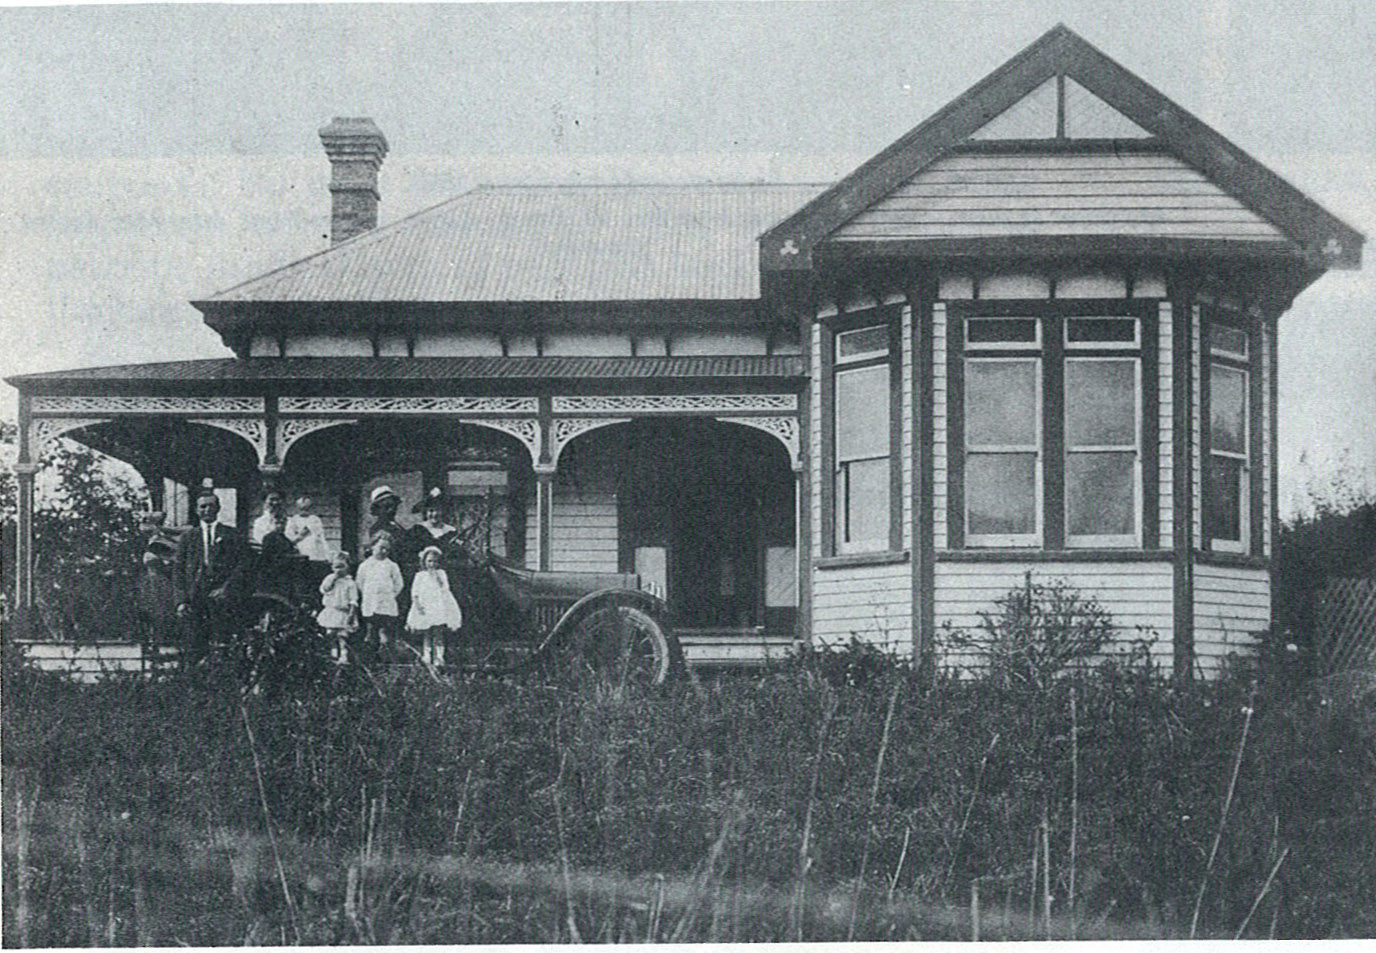 Fernleigh Downs Homestead, built 1910